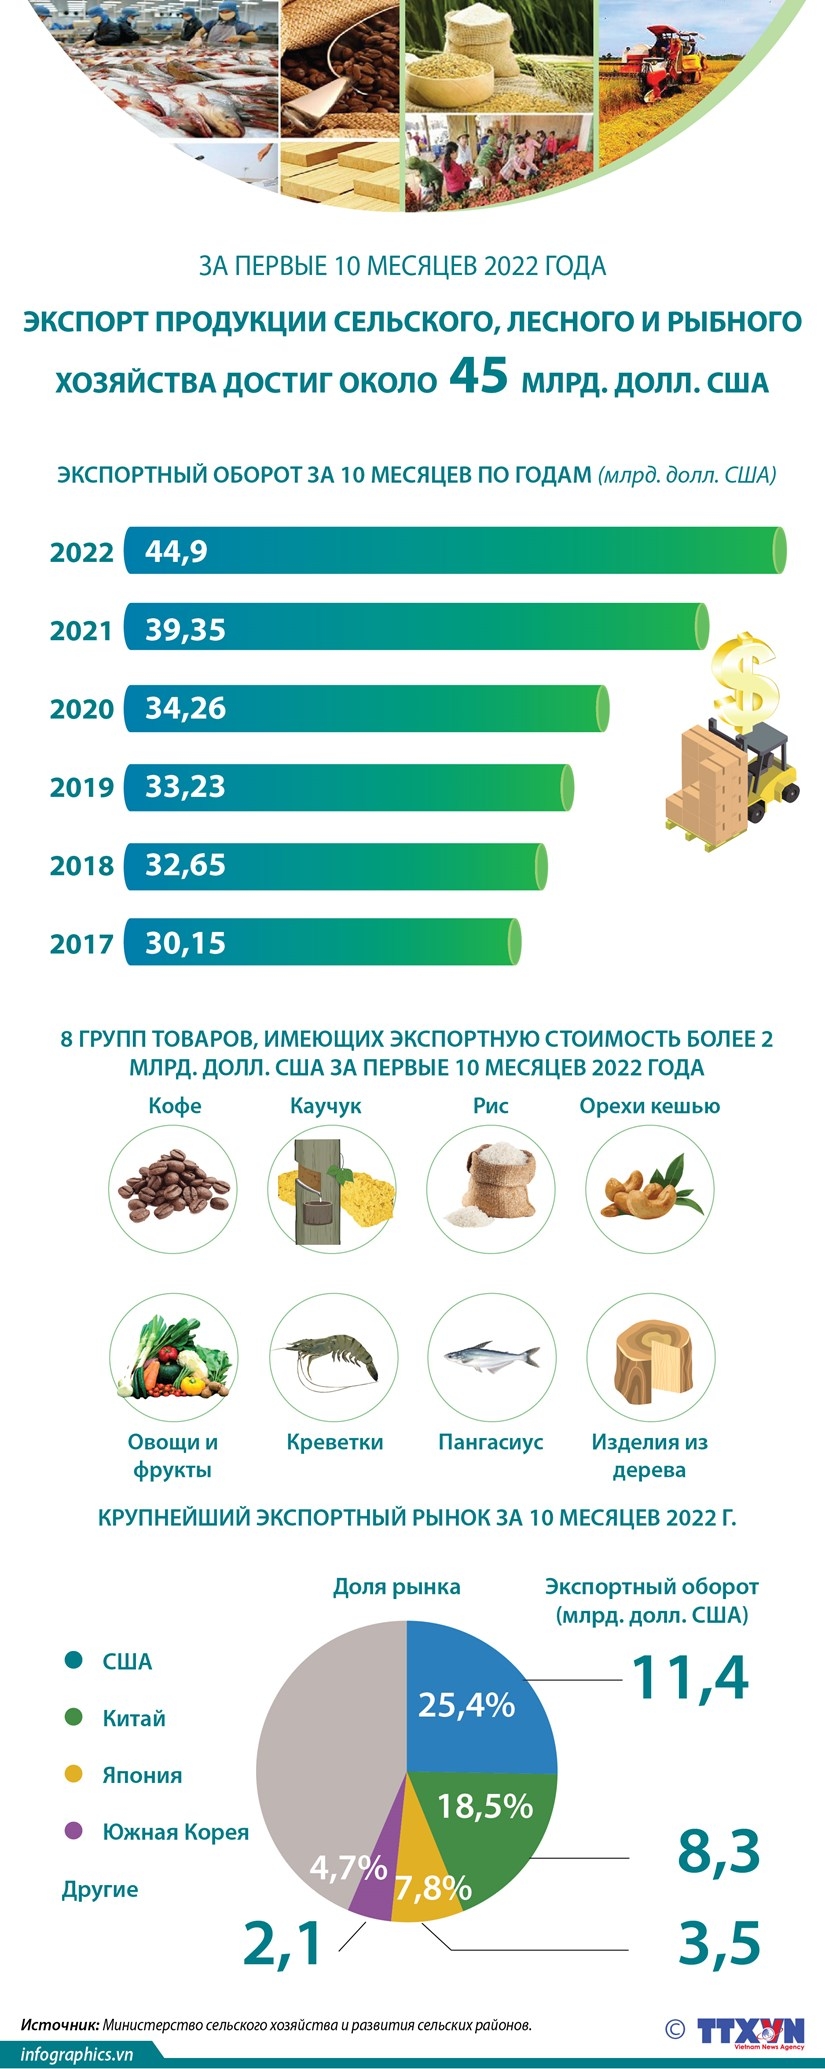 Экспорт продукции сельского, лесного и рыбного хозяйства достиг около 45 млрд. долл. США за первые 10 месяцев 2022 года